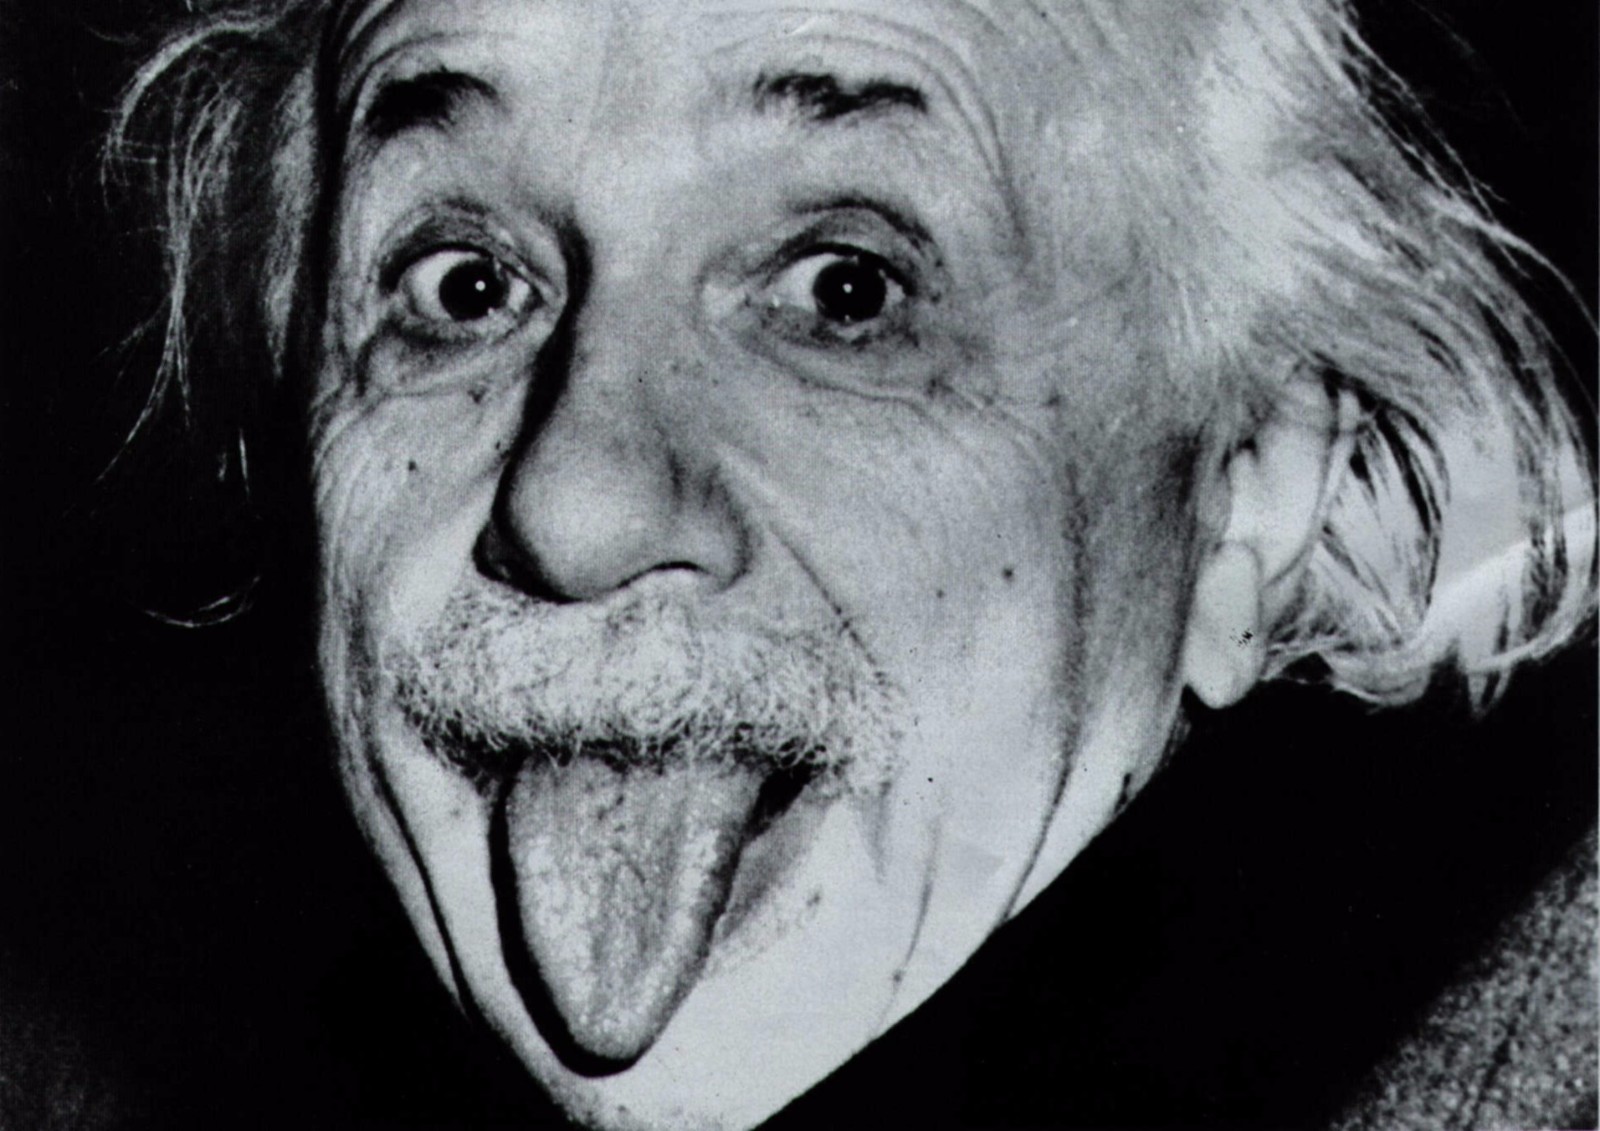 爱因斯坦吐舌照50万拍出_影像频道_蜂鸟网